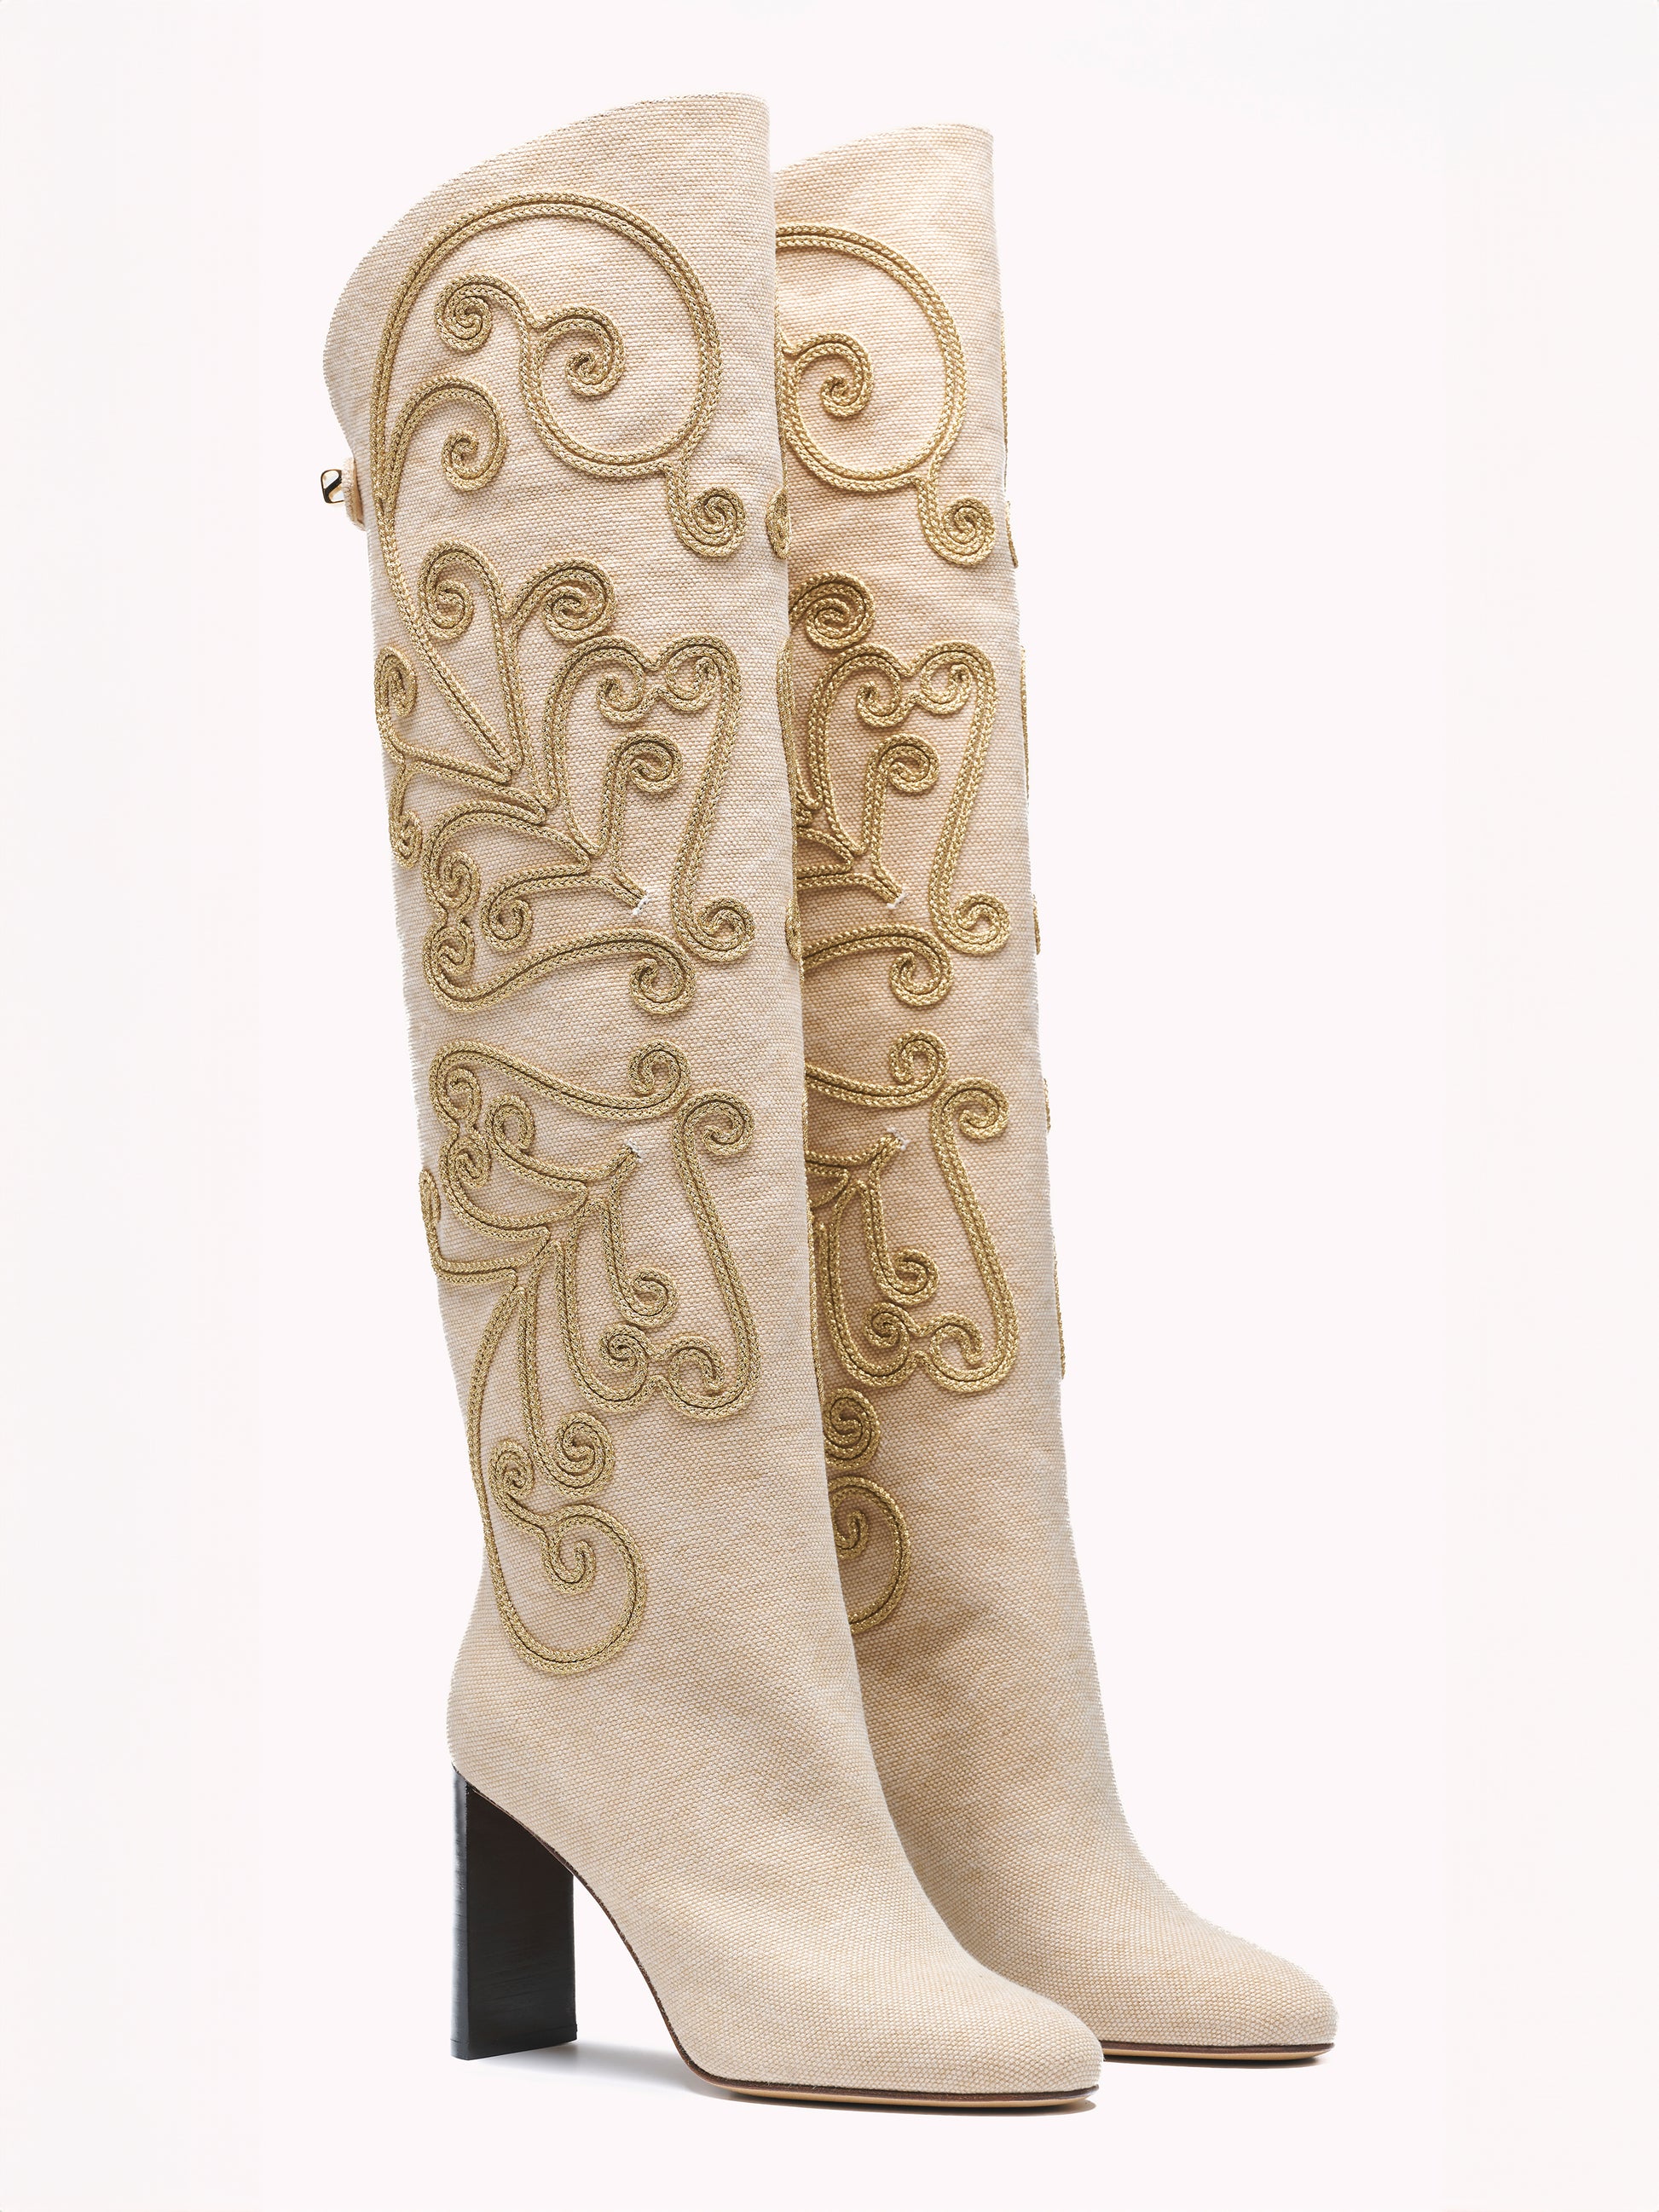 designer boots women beige canvas comfortable high heels skorpios